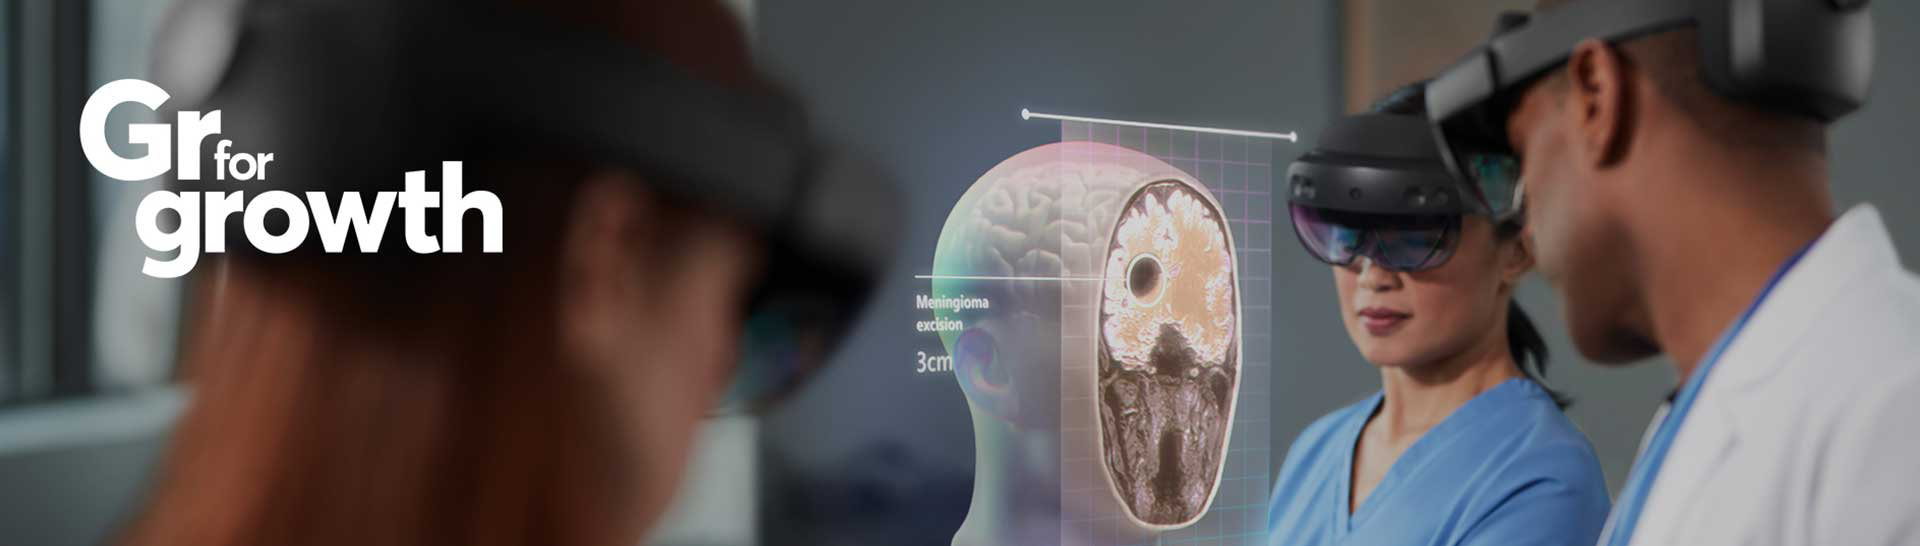 Φωτογραφία καινοτομία. Ιατροί παρατηρούν έναν ανθρώπινο εγκέφαλο με Microsoft HoloLens